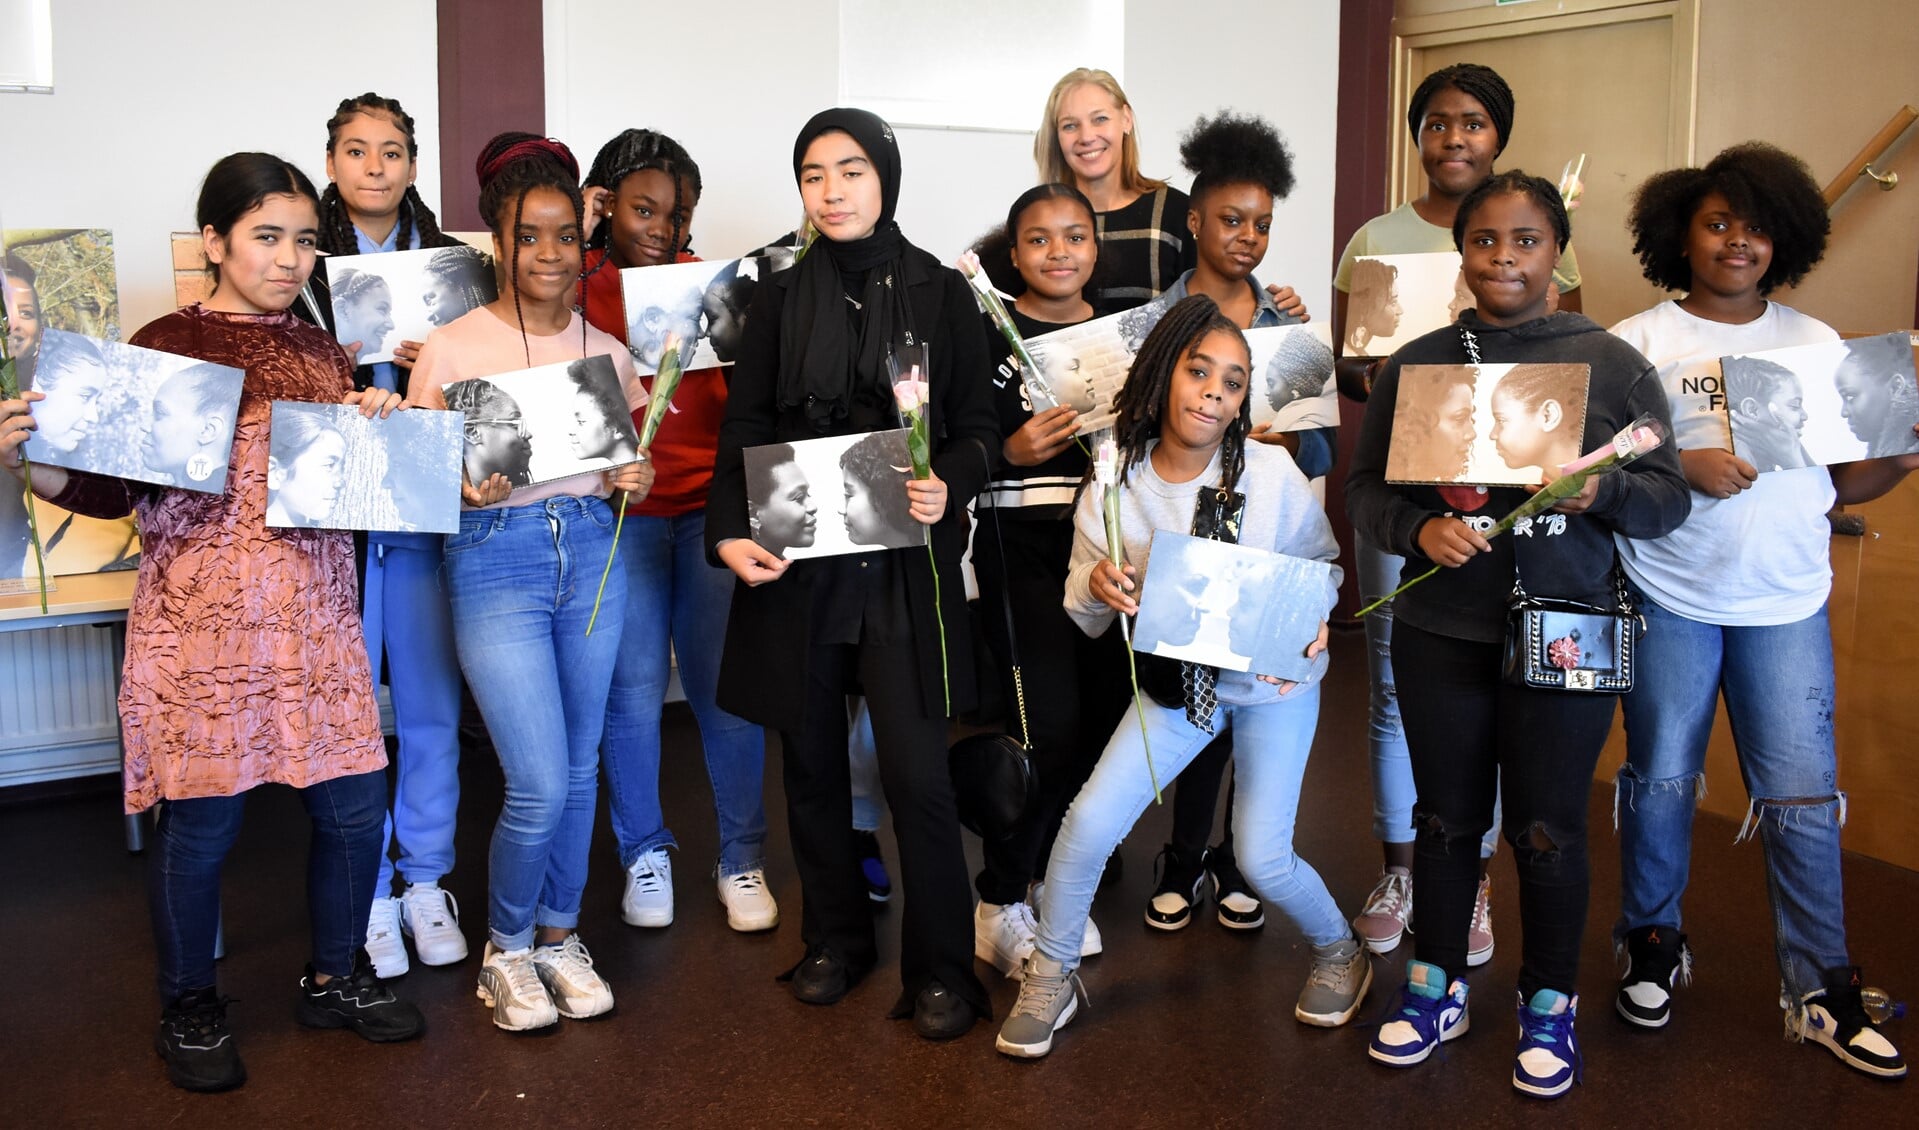 Meiden uit Schiebroek-Zuid  bij de opening van de expositie met 30 portetten van jonge meiden en hun rolmodellen over opgroeien, kansen en toekomstdromen. Foto: pr